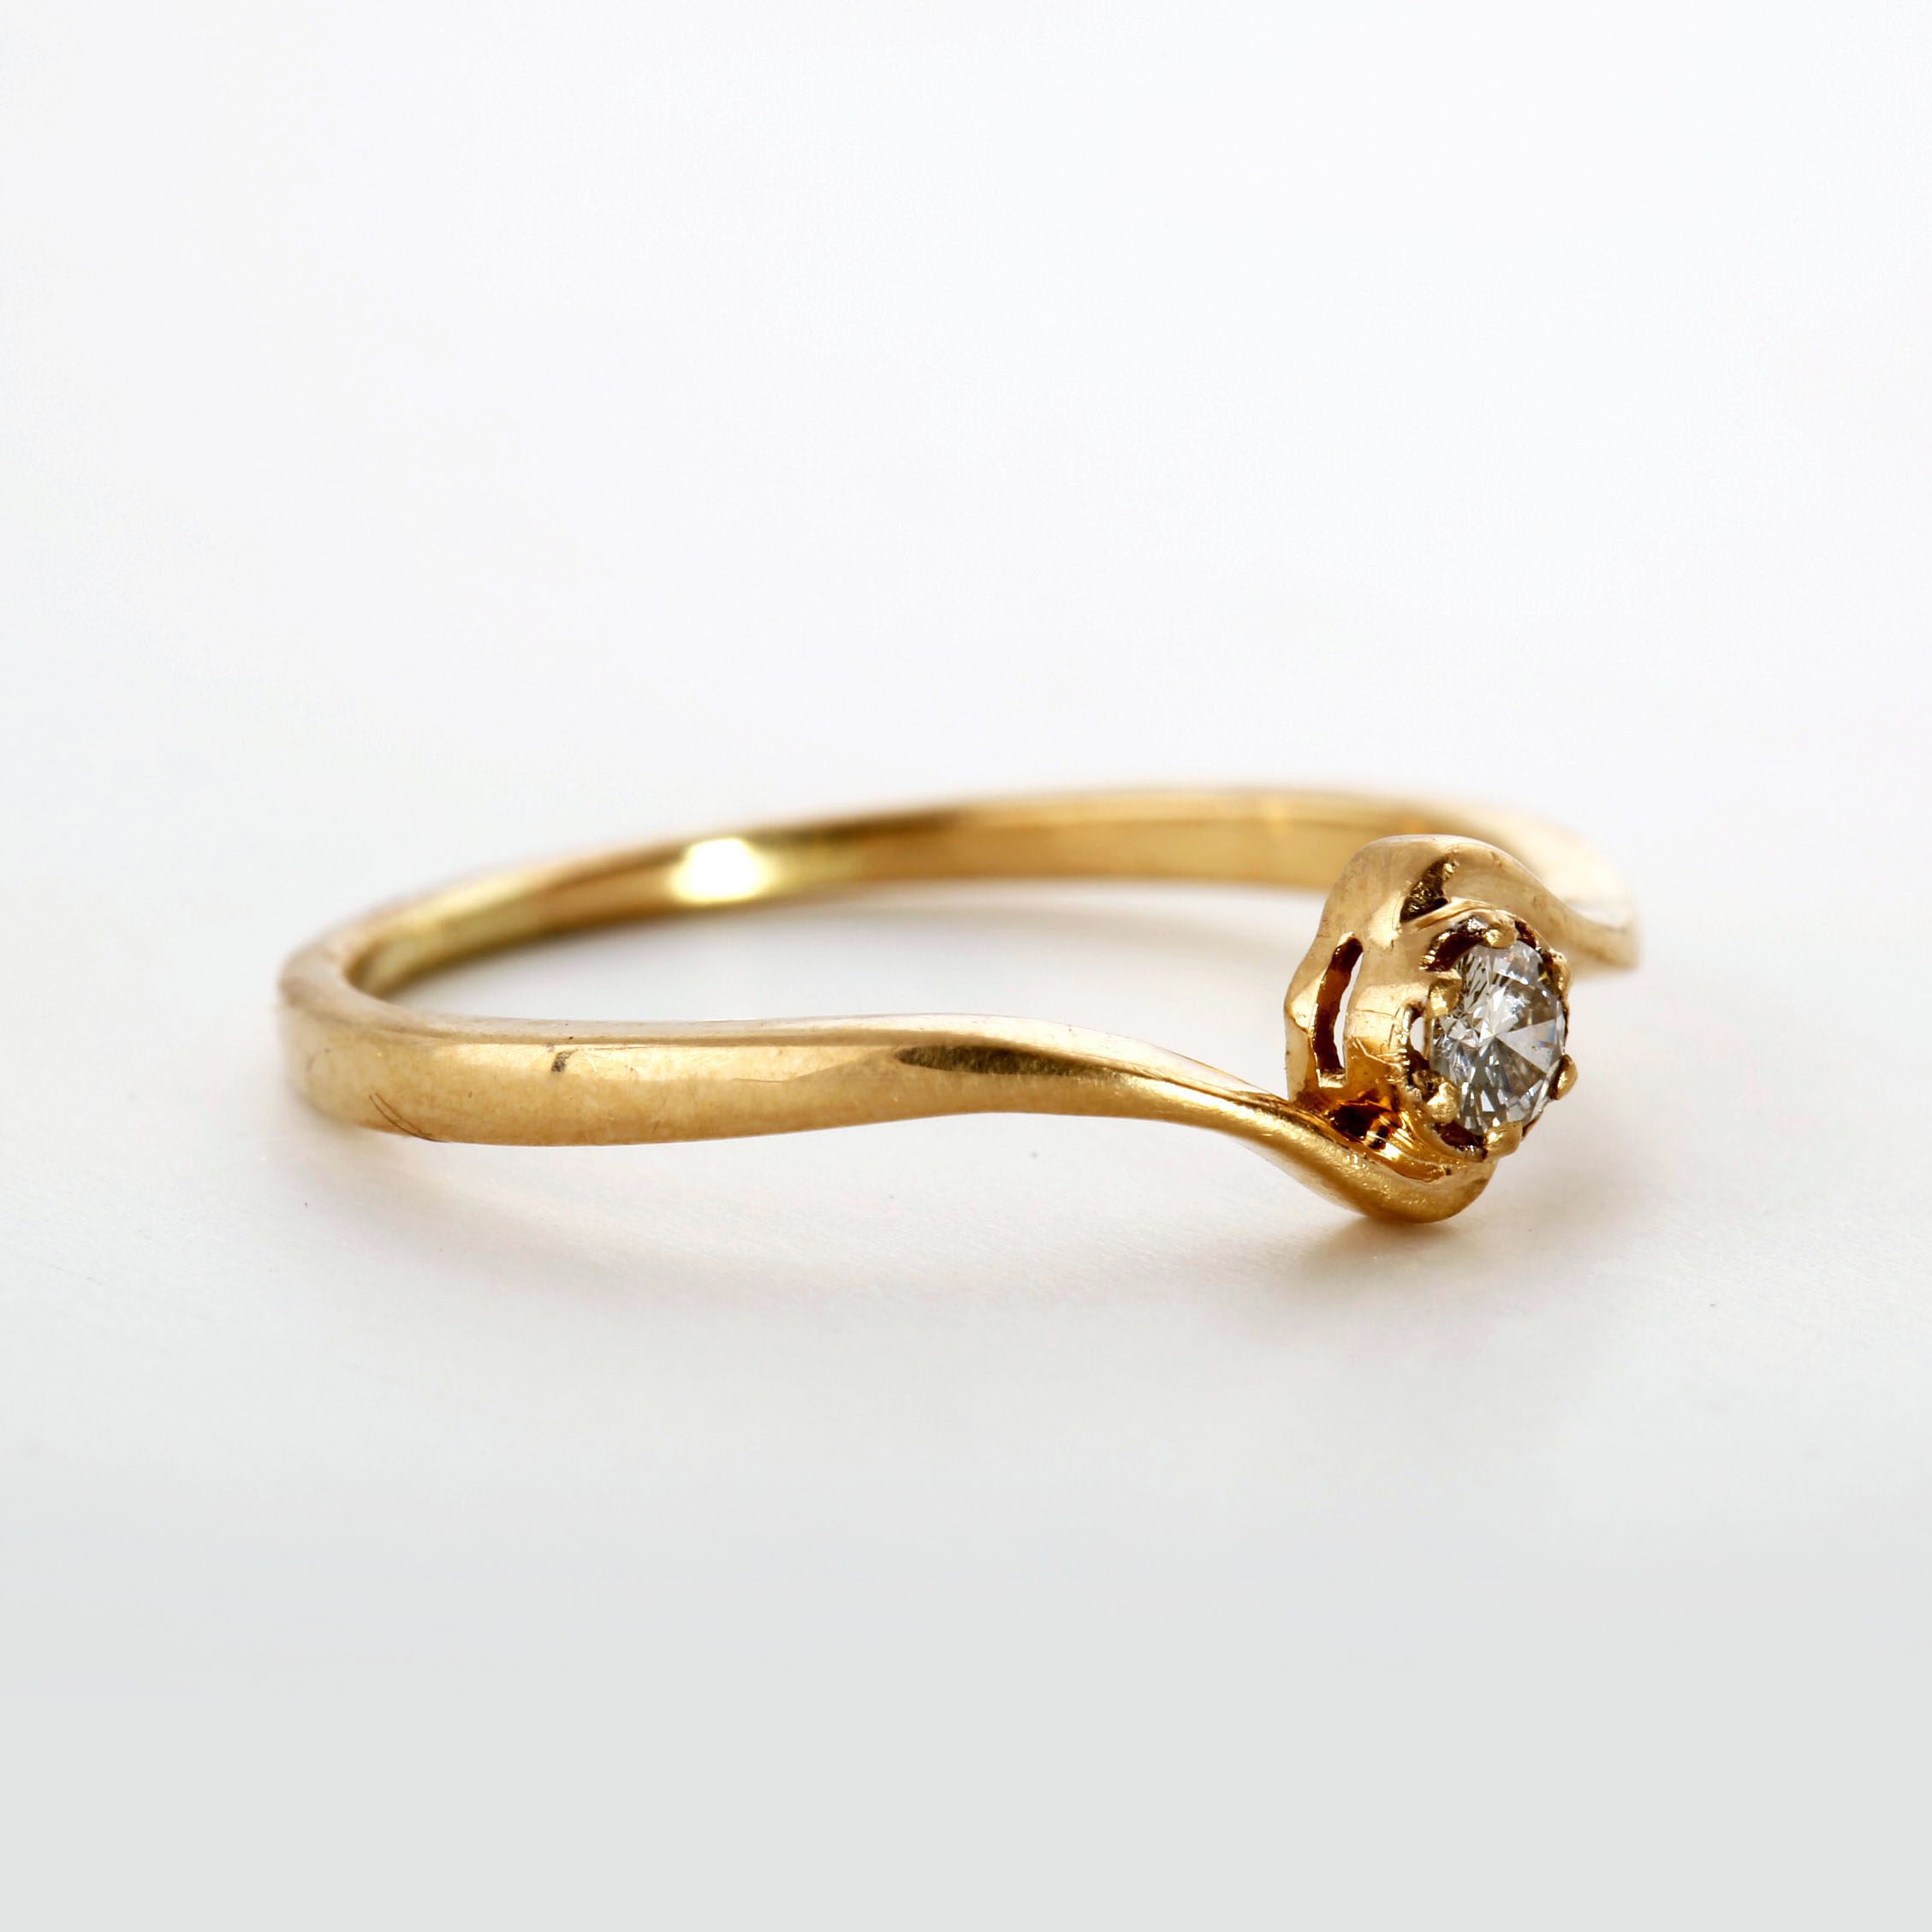 शादी हो या इंडियन त्यौहार, हर रुप-रंग में जचेंगे Gold Ring For Women,  महिलाएं देख खरीदने को तरसेंगी | best gold ring for women that gives a  luxury and classy look |